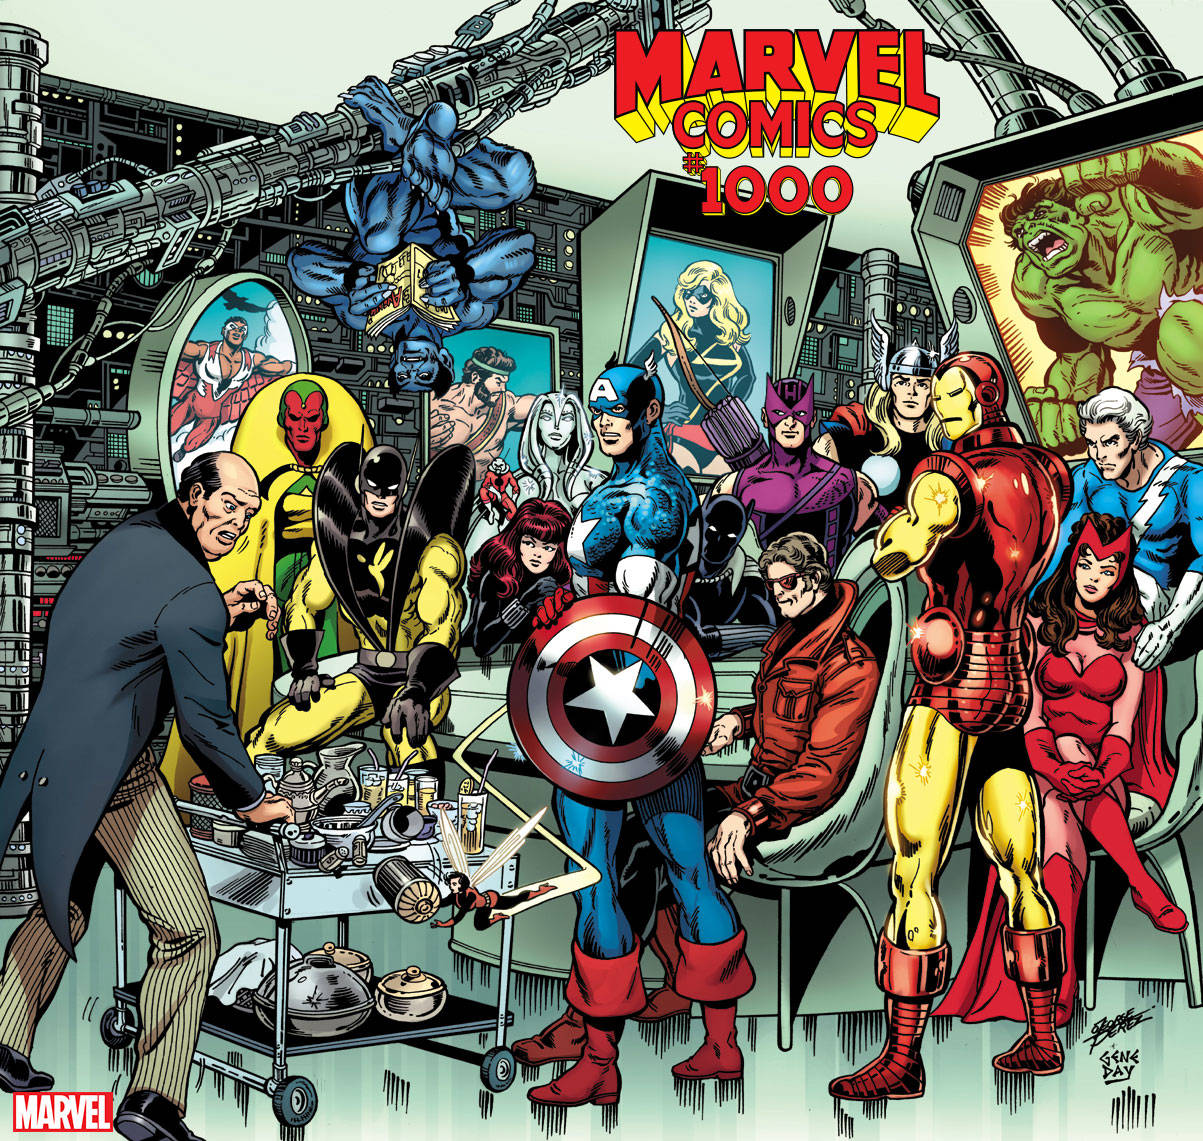 George Pérez - Avengers - Poster - Vingadores - Marvel Comics 1000 - www.farofeiros.com.br